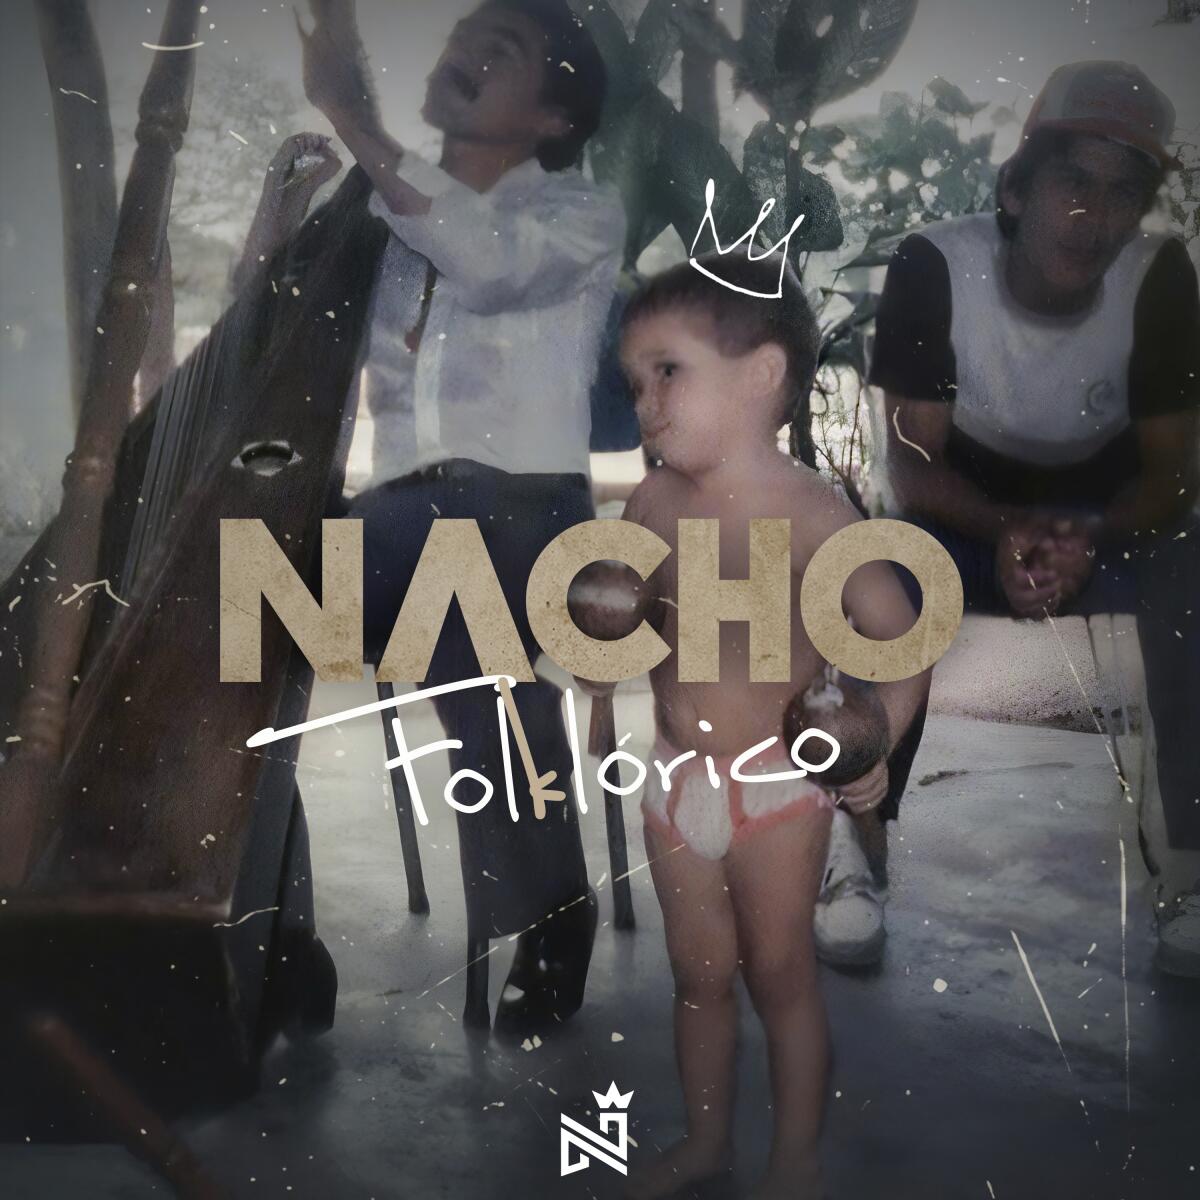 La portada del nuevo álbum de Nacho, "Nacho Folklórico",